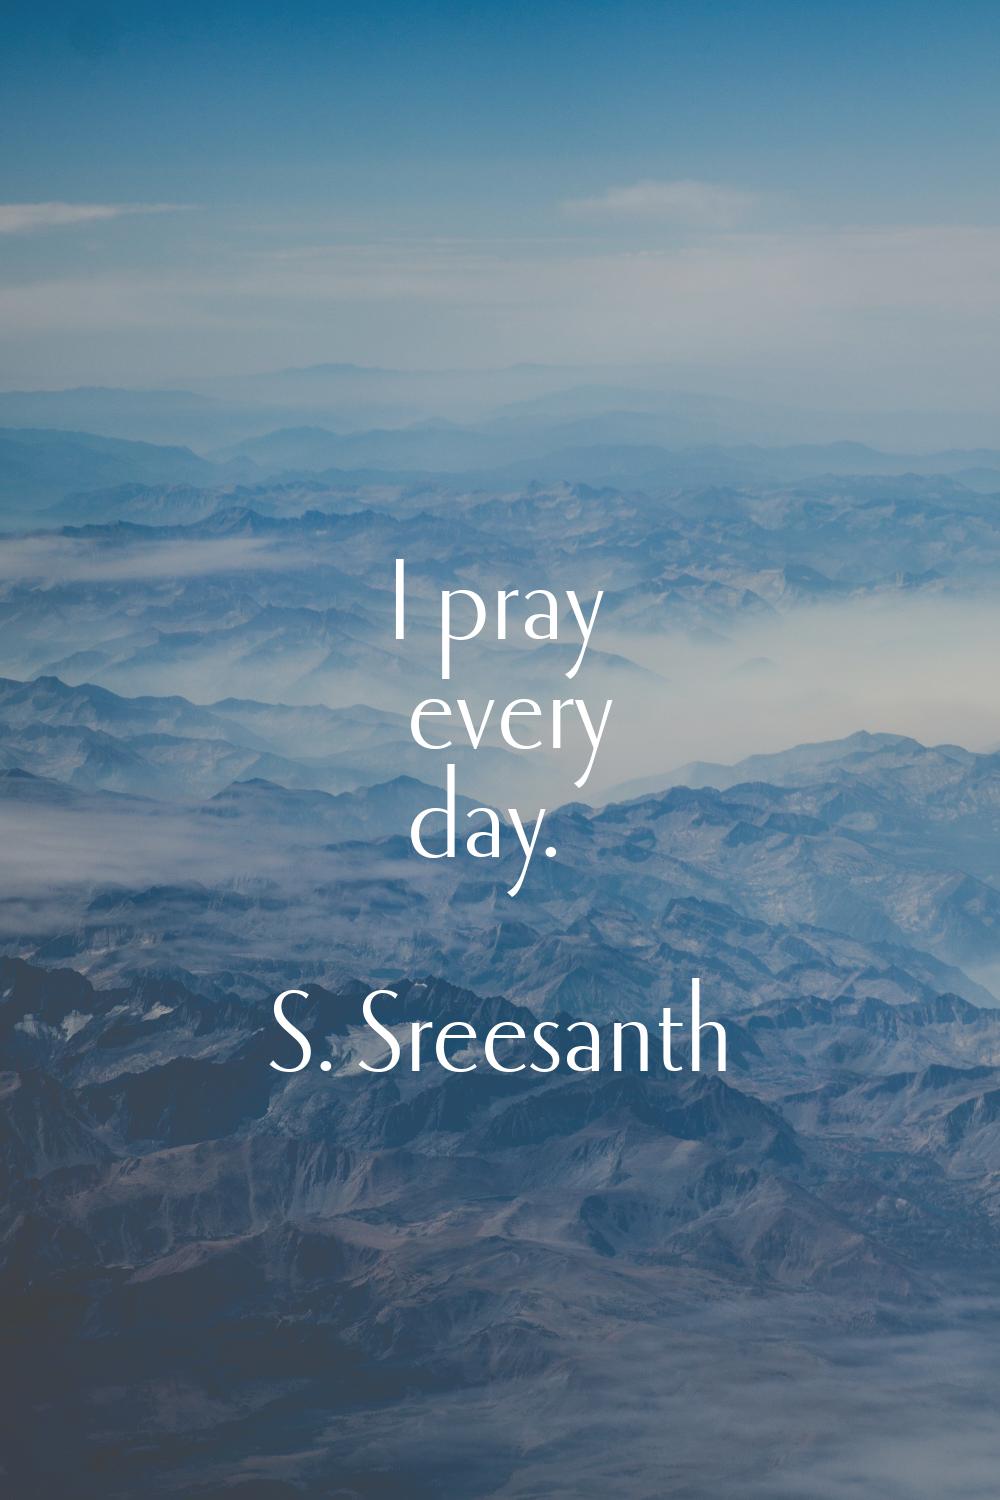 I pray every day.